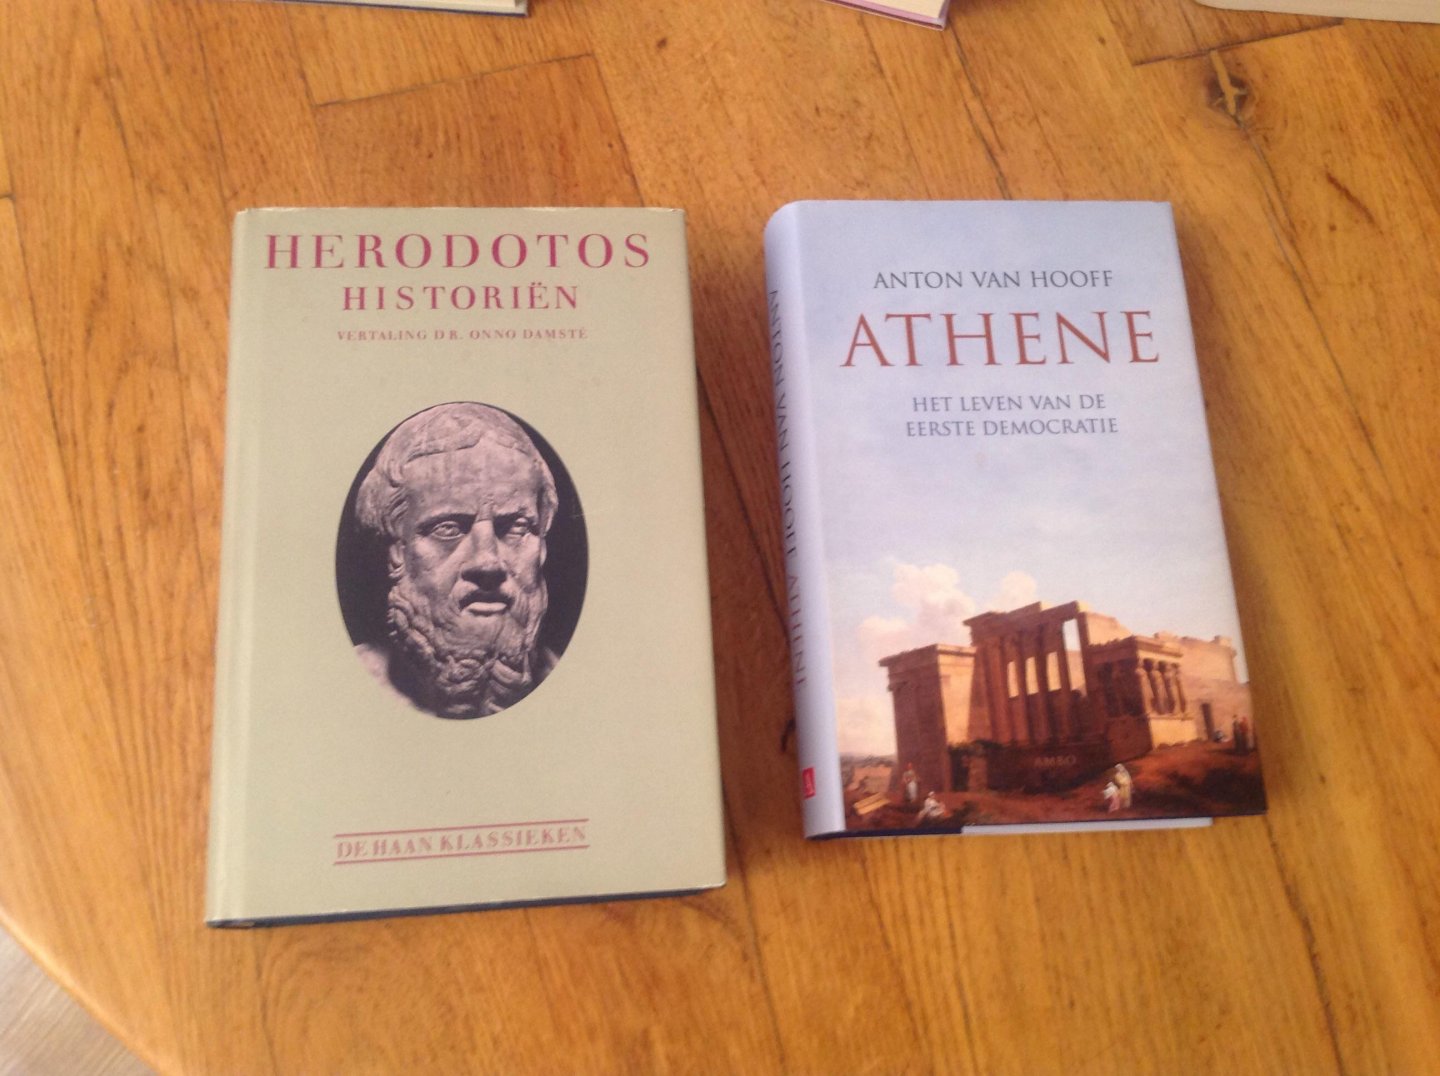 Herodotos - Historien / druk 10